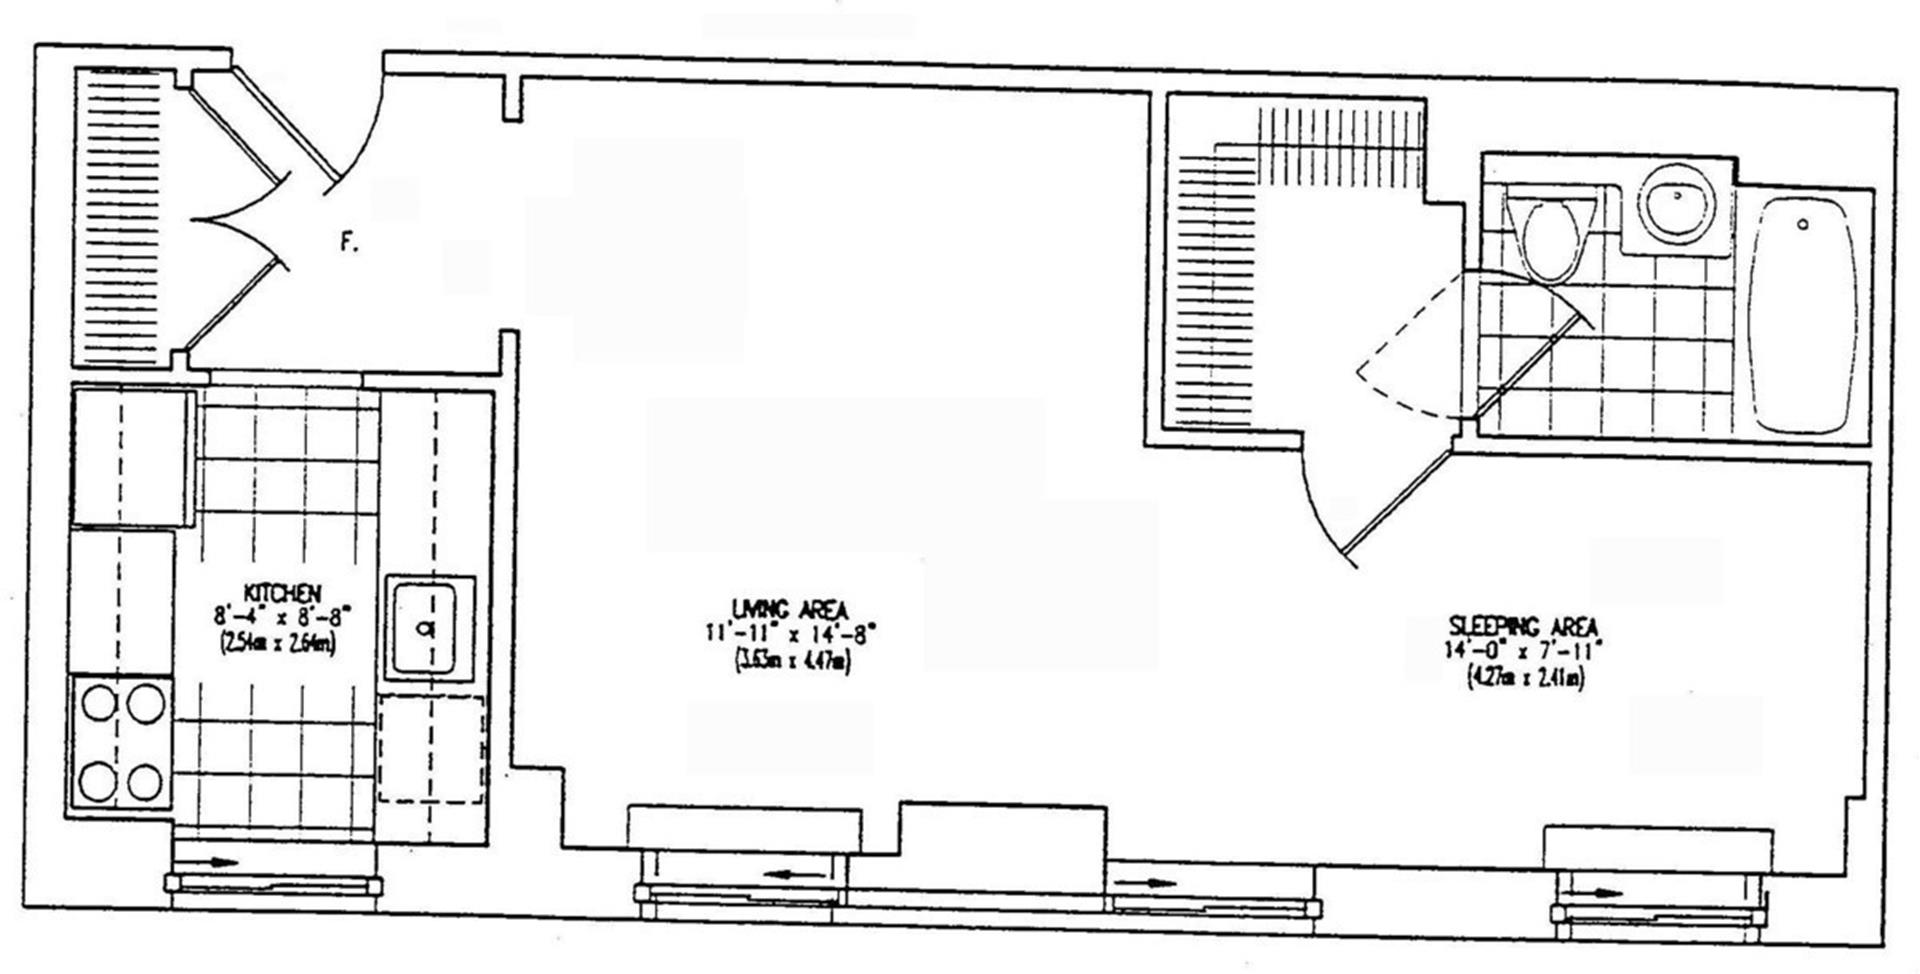 Floorplan for 401 East 60th Street, 7N